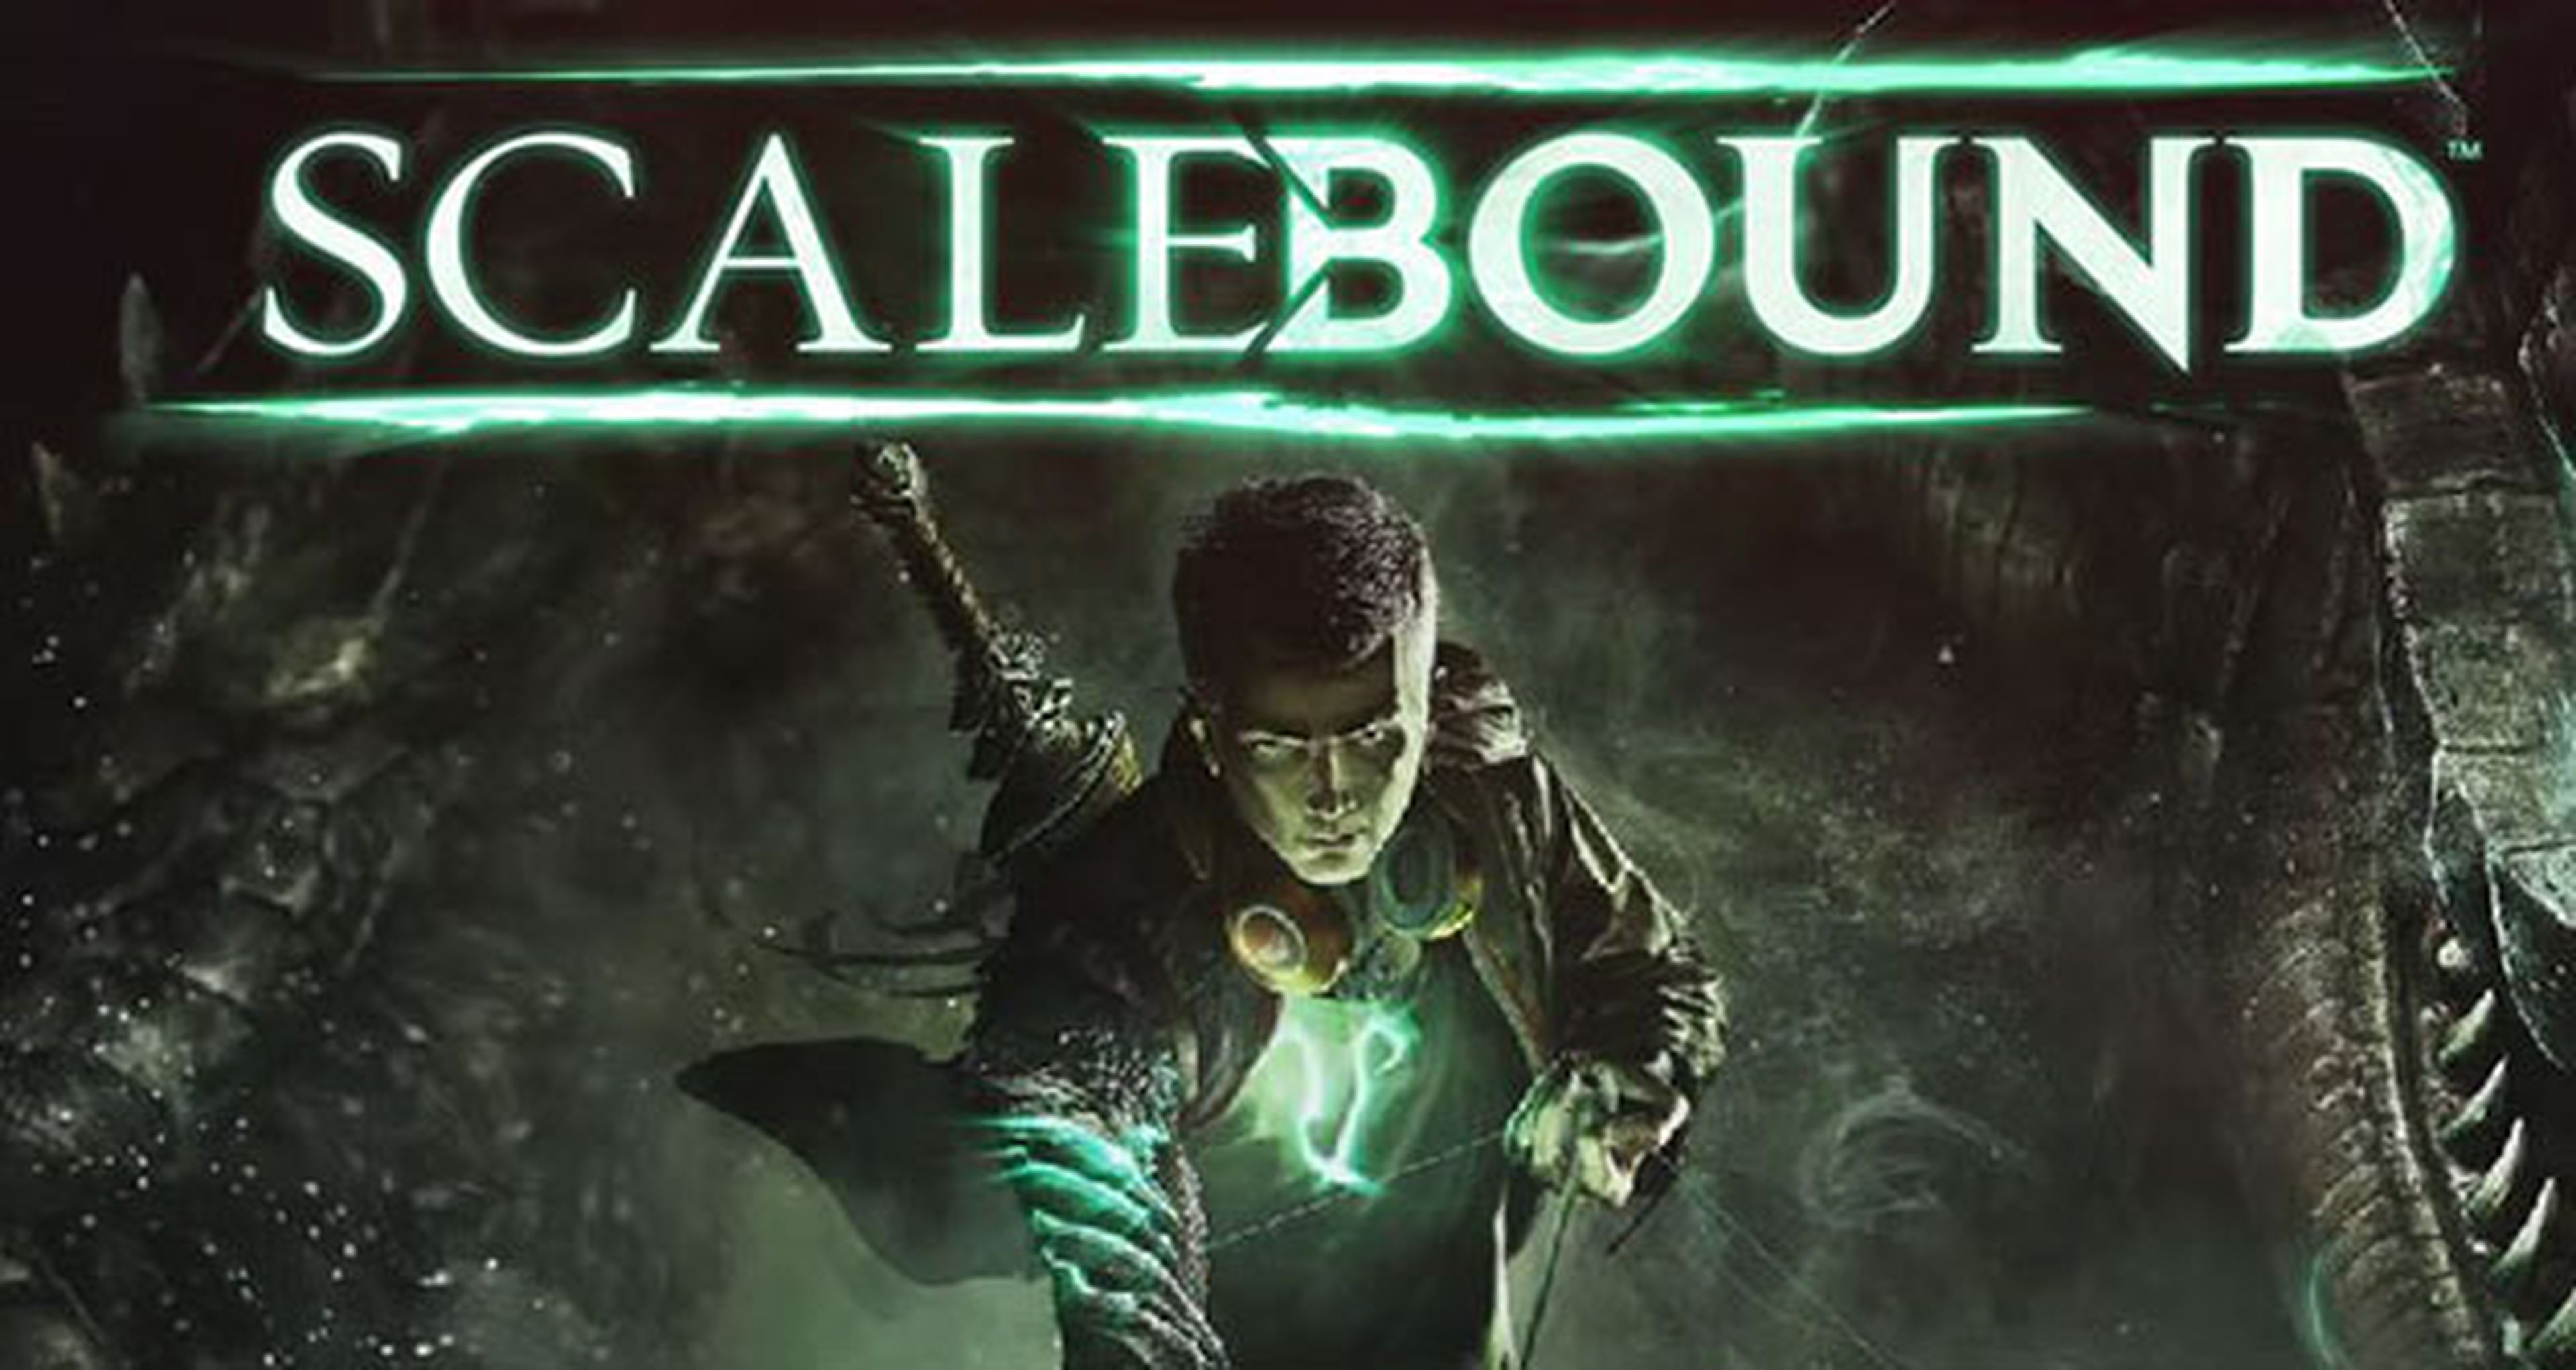 Scalebound, exclusivo de Xbox One, tiene muy buena pinta